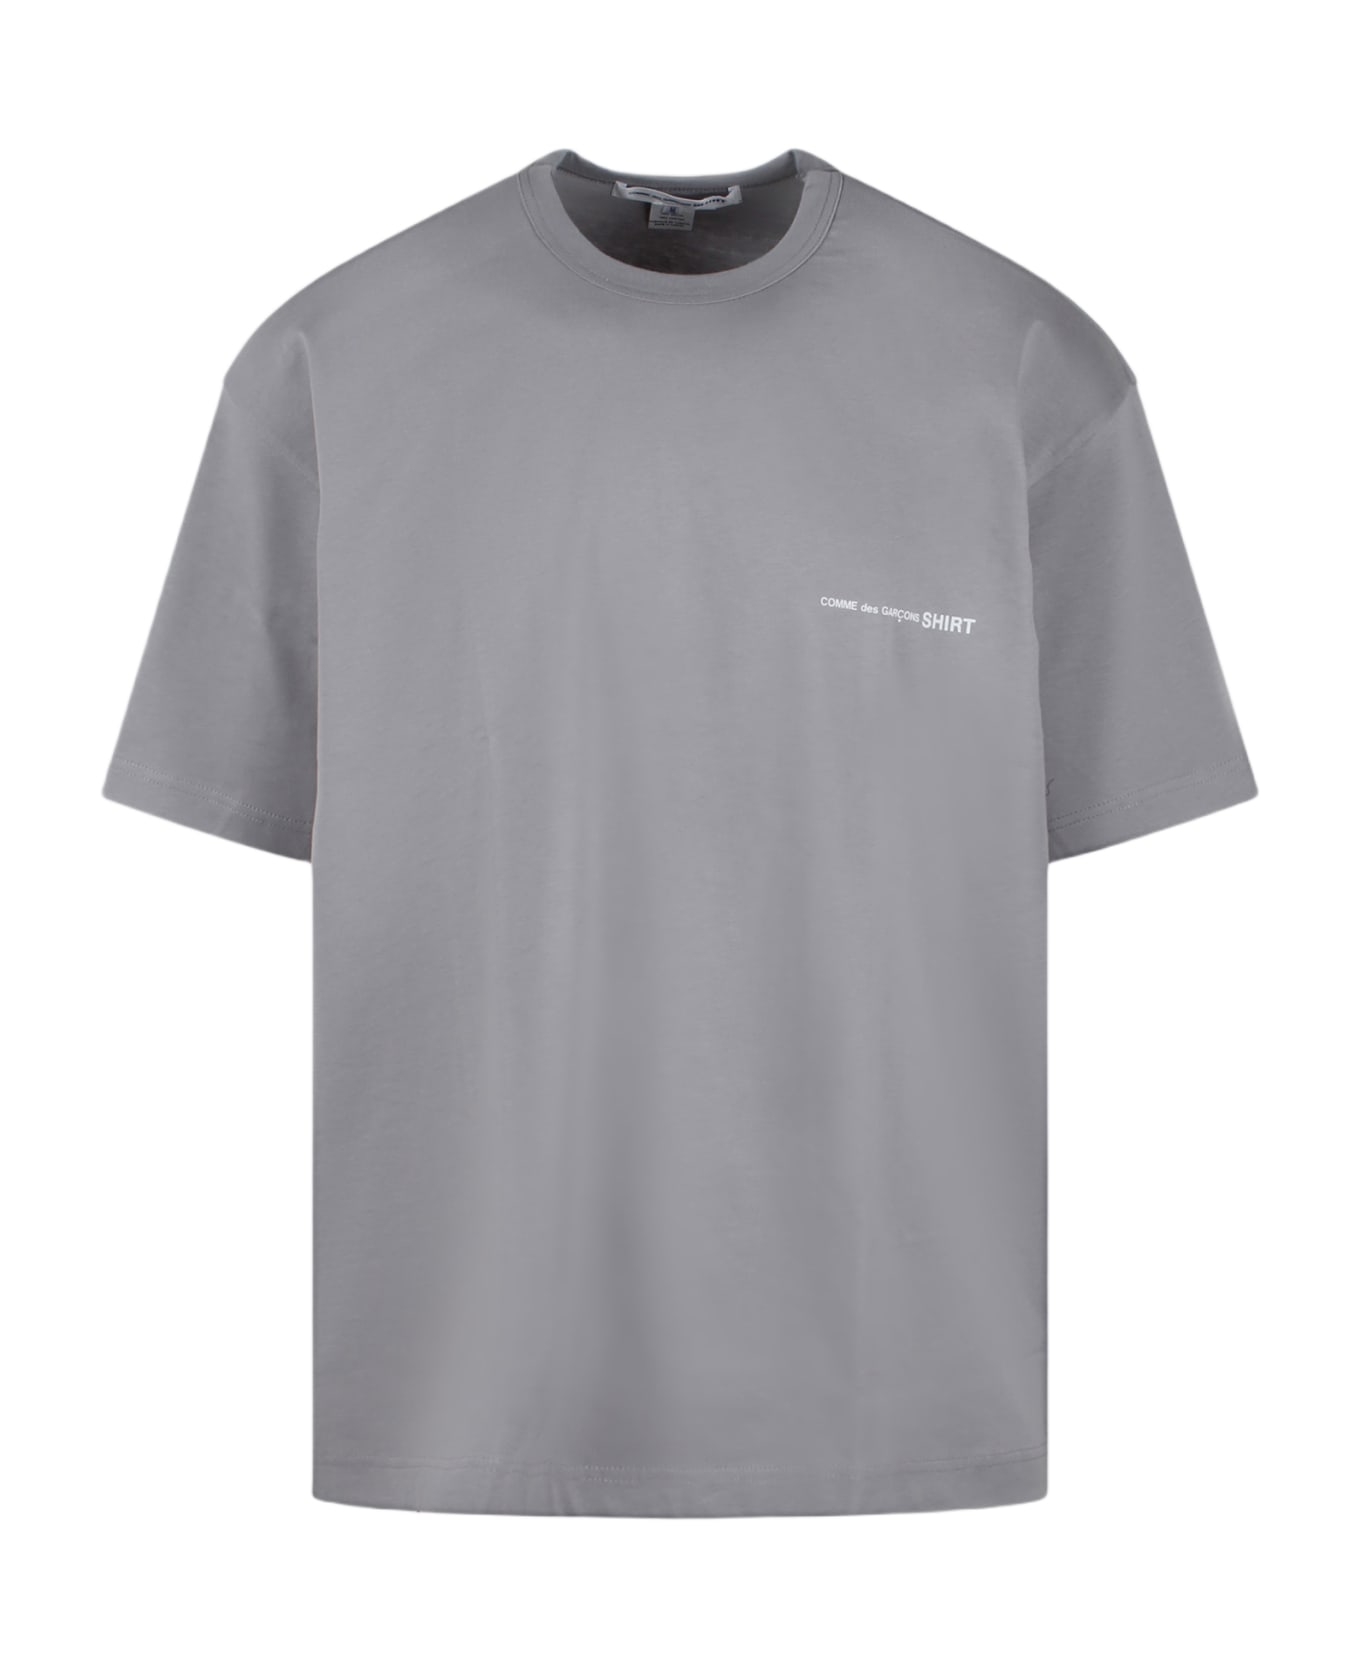 Comme des Garçons Shirt Jersey Cotton Basic T-shirt - Grey